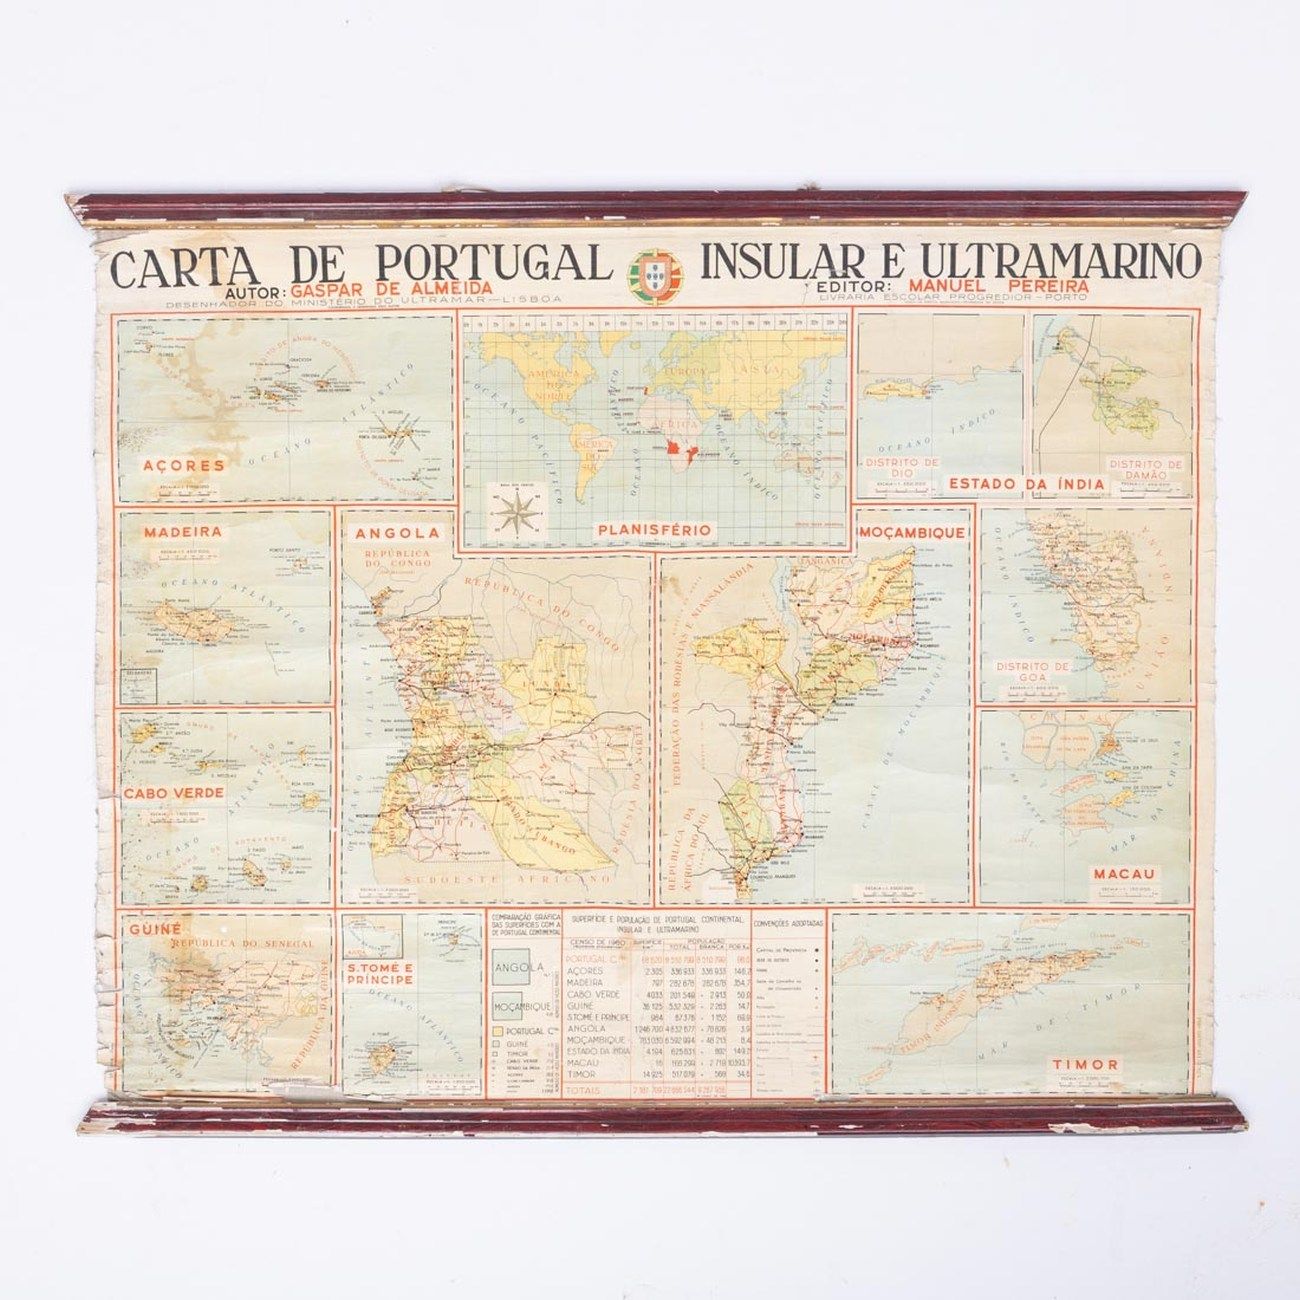 CARTA DE PORTUGAL INSULAR E ULTRAMARINO CHARTER OF INSULAR AND ULTRAMARINE PORTU&hellip;